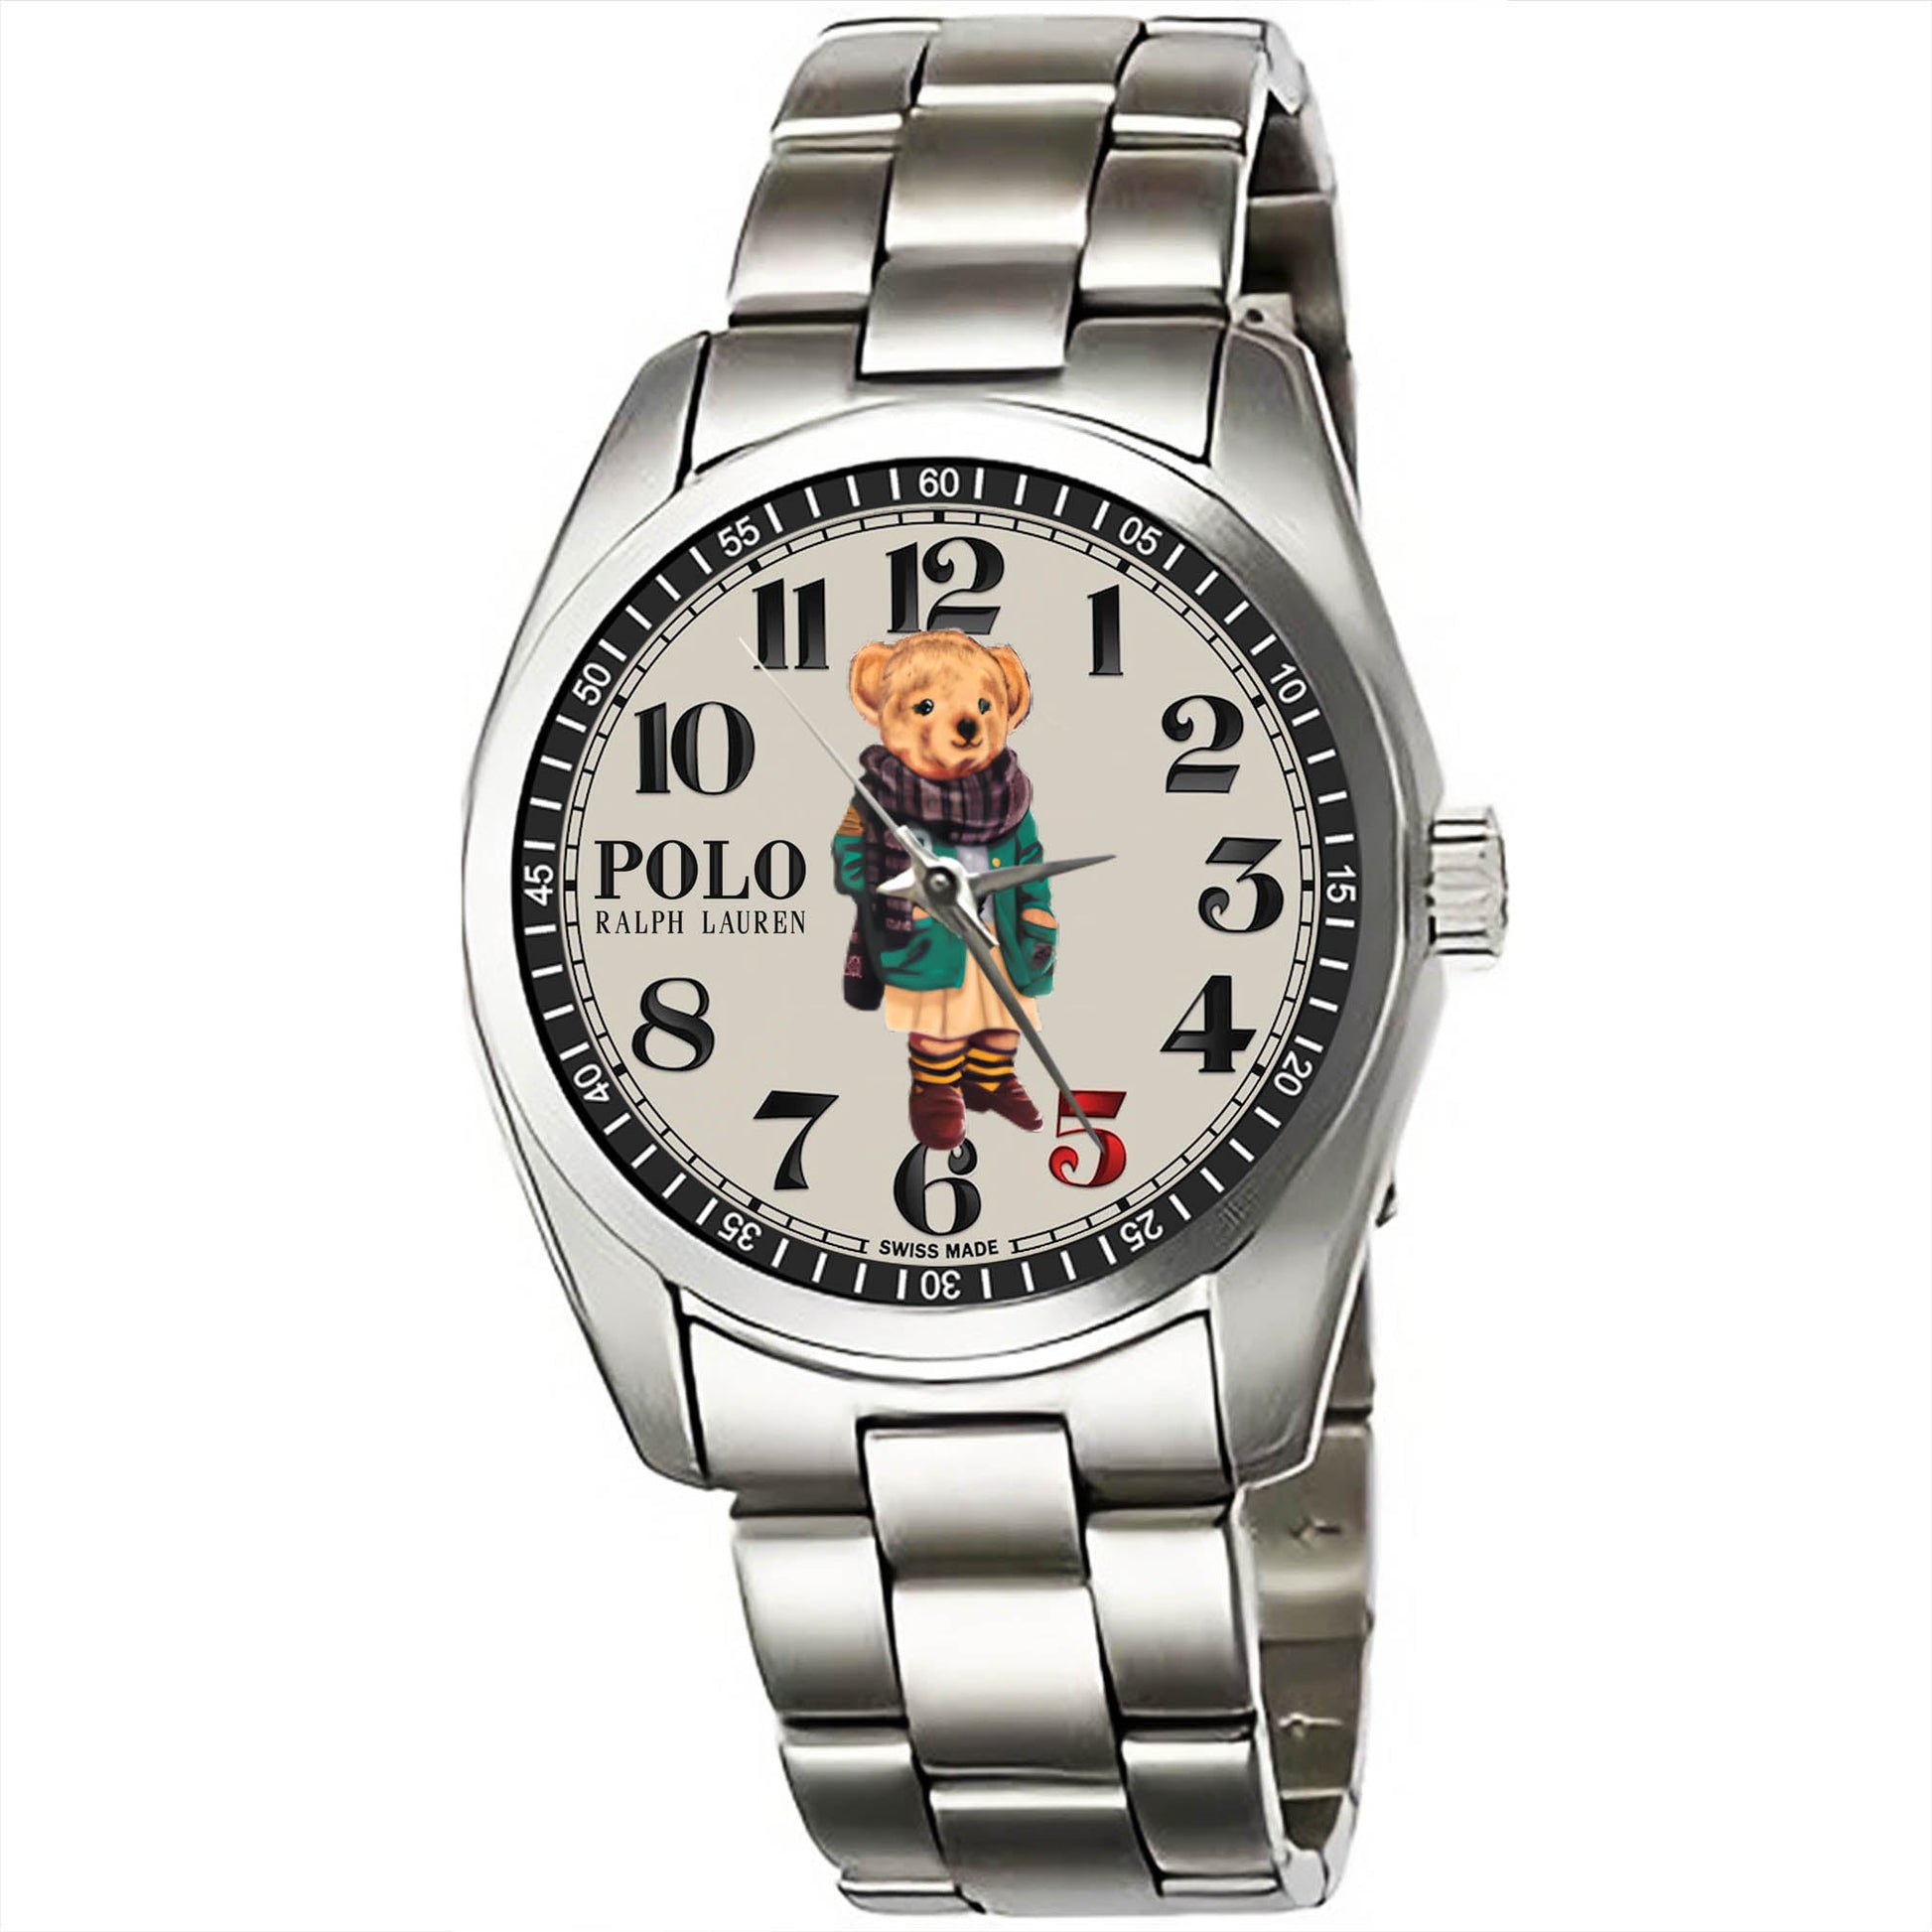 The Ralph Lauren Polo Bear Watch KP815